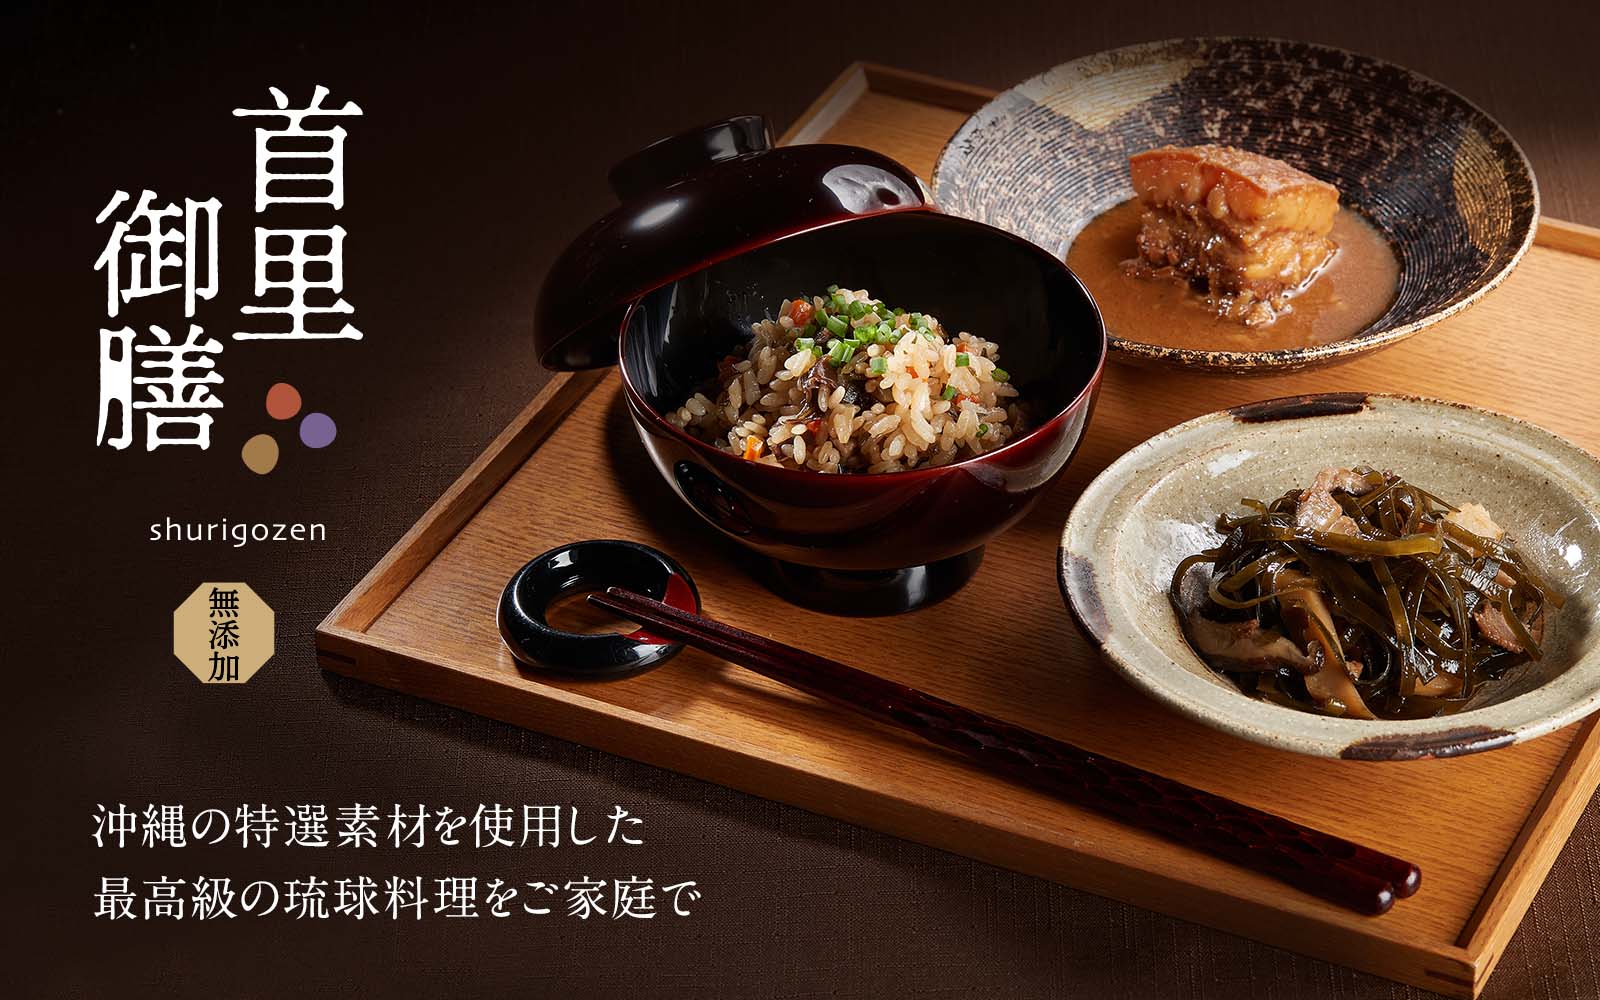 首里御膳 沖縄の特選素材を使用した最高級の琉球料理をご家庭で